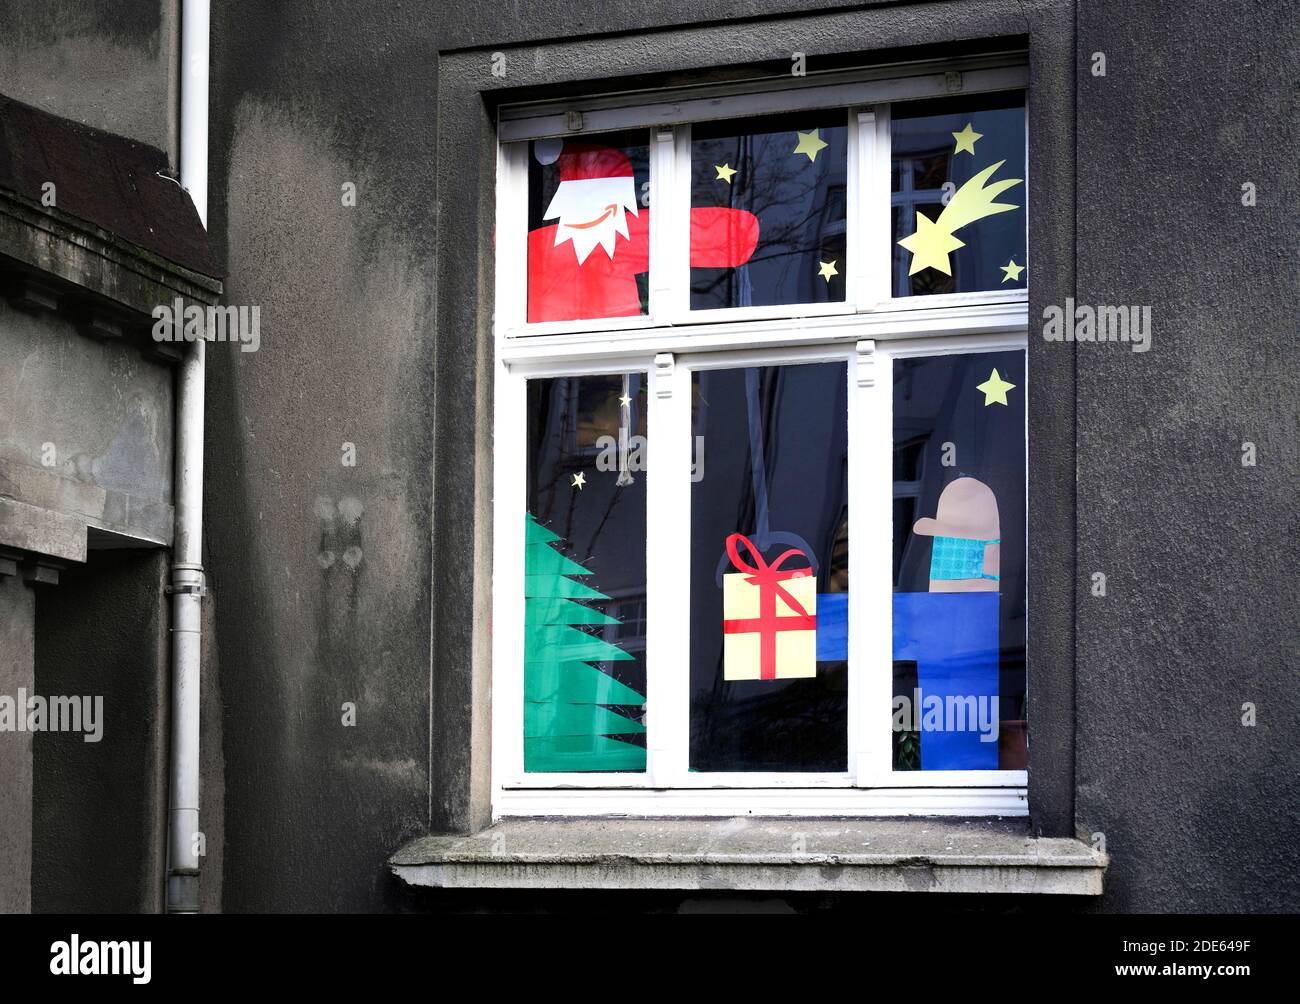 Dortmund, 29. November 2020: Nikolaus mit dem Amazon-Logo als sein Mund das Paket liefert, trägt der gebende Mann Mund- und Nasenschutz gegen das Virus. Apartment Fenster für Weihnachten geschmückt zeigt Heiligabend in Corona Zeiten. Stockfoto